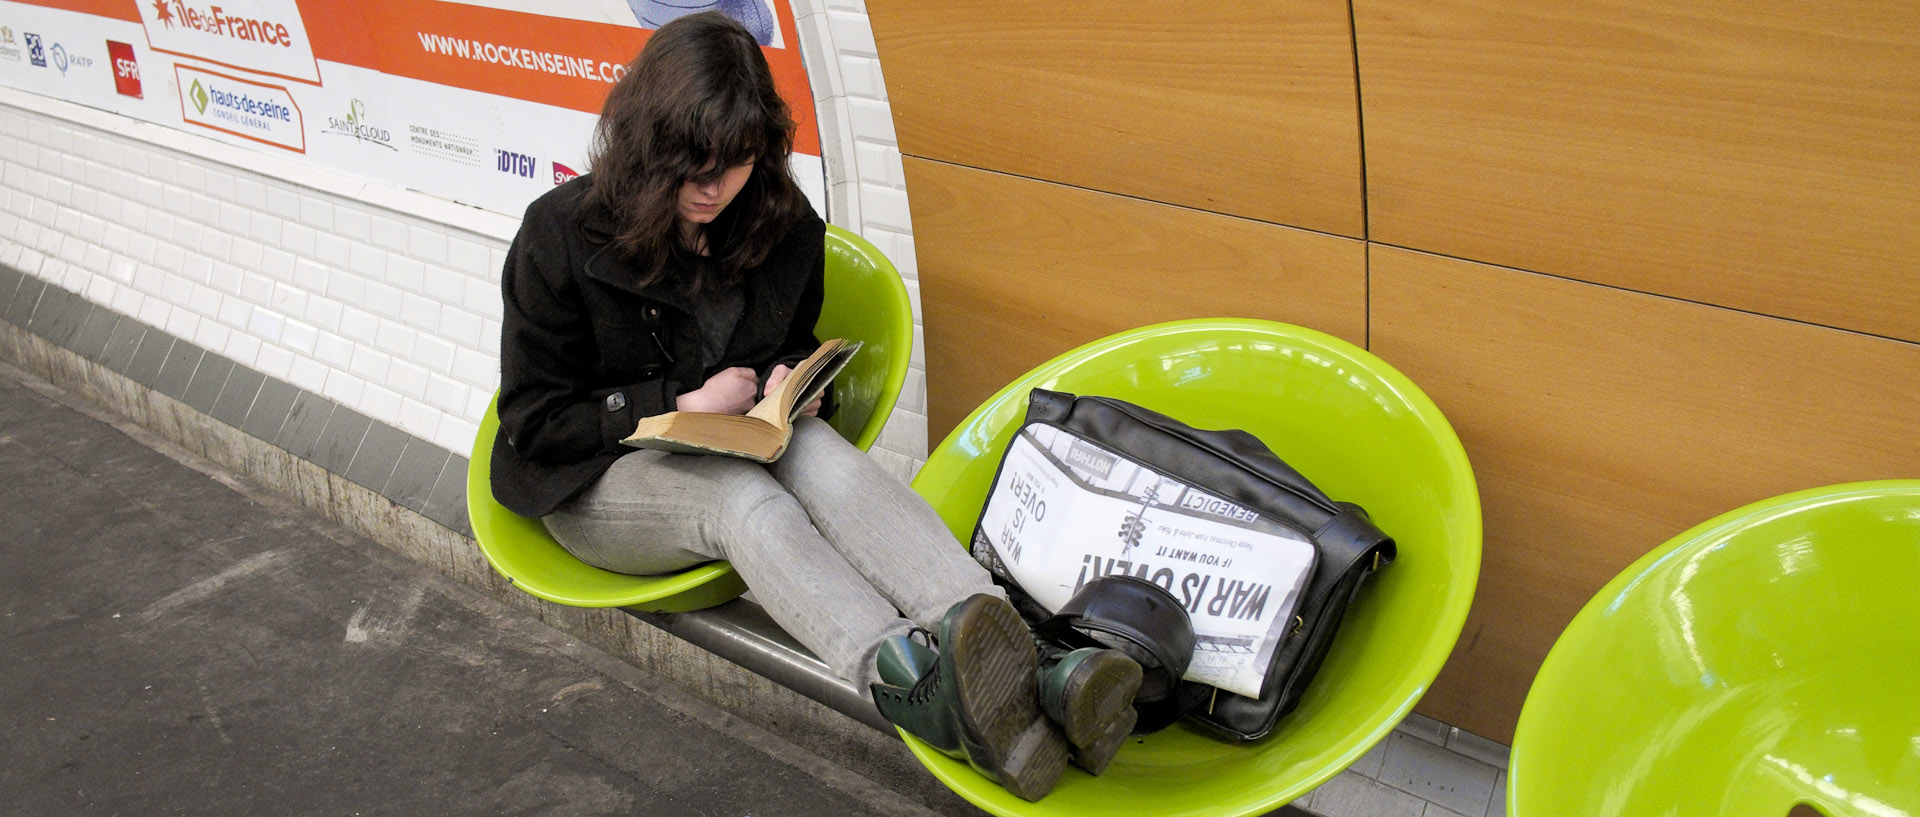 Jeune fille lisant un livre dans une station de métro, à Paris.